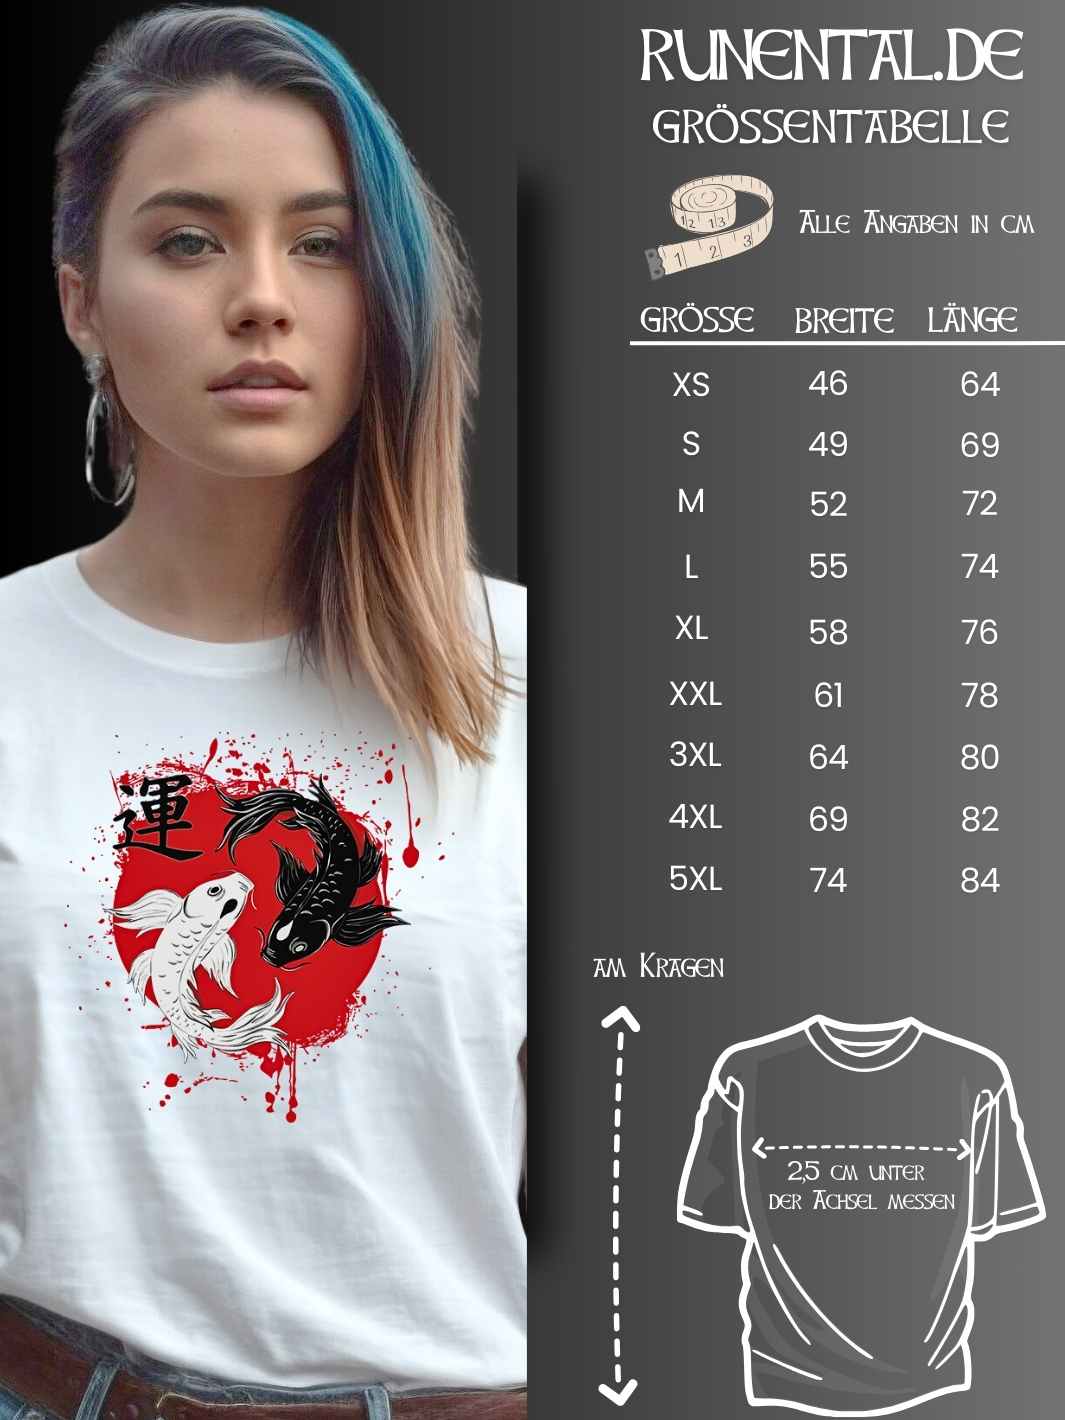 Größentabelle für das Harmonic Koi Unisex T-Shirt – Wähle die perfekte Größe für deinen Style.